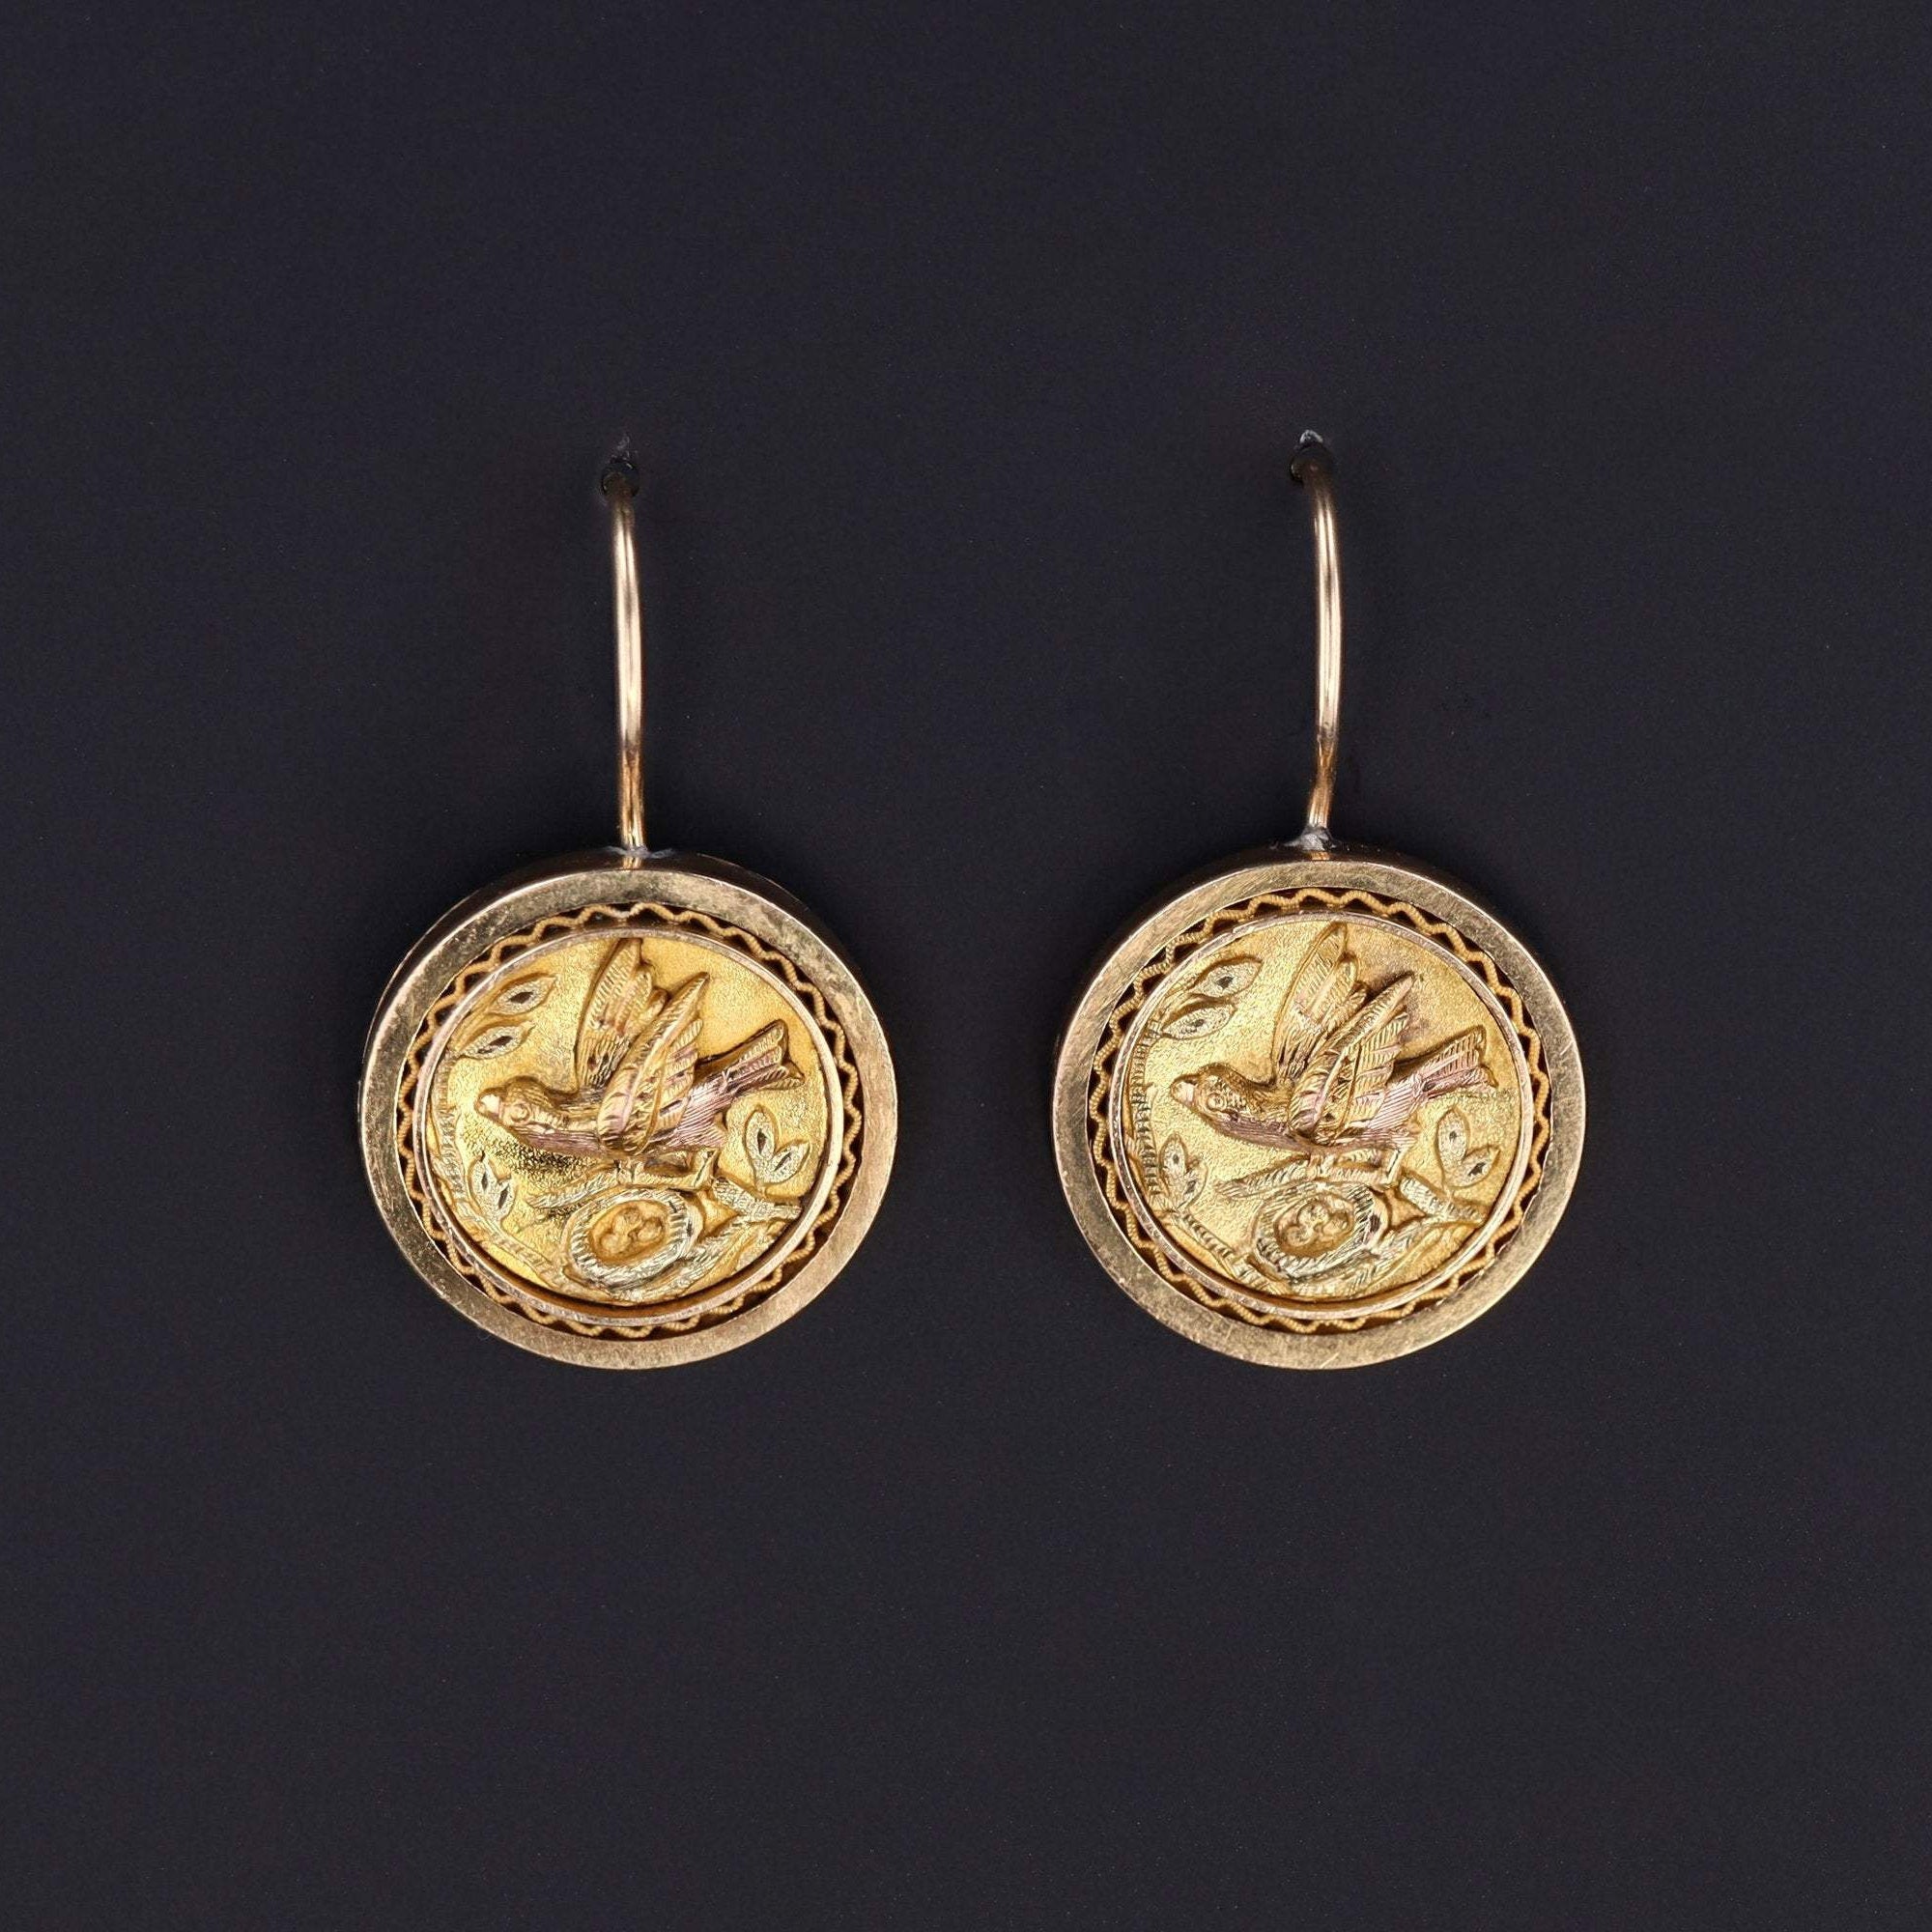 Gold Bird Earrings | 14k Gold Earrings | Antique Bird Earrings | Antique Cufflink Conversion Earrings